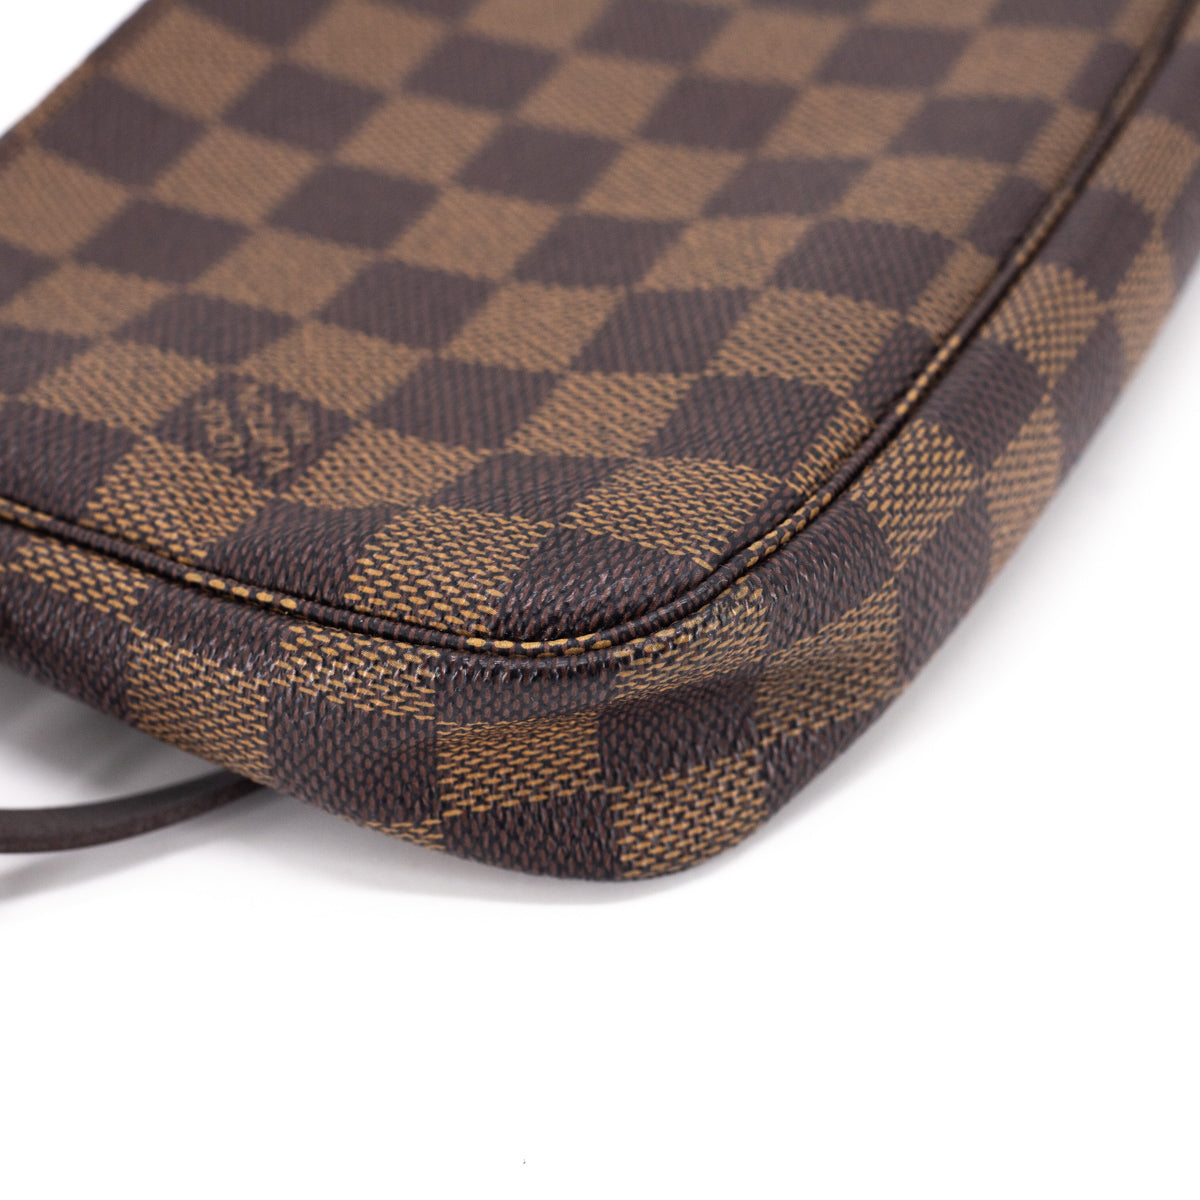 L*V Damier Ebene Rift Pochette Bag (Pre Owned) – ZAK BAGS ©️